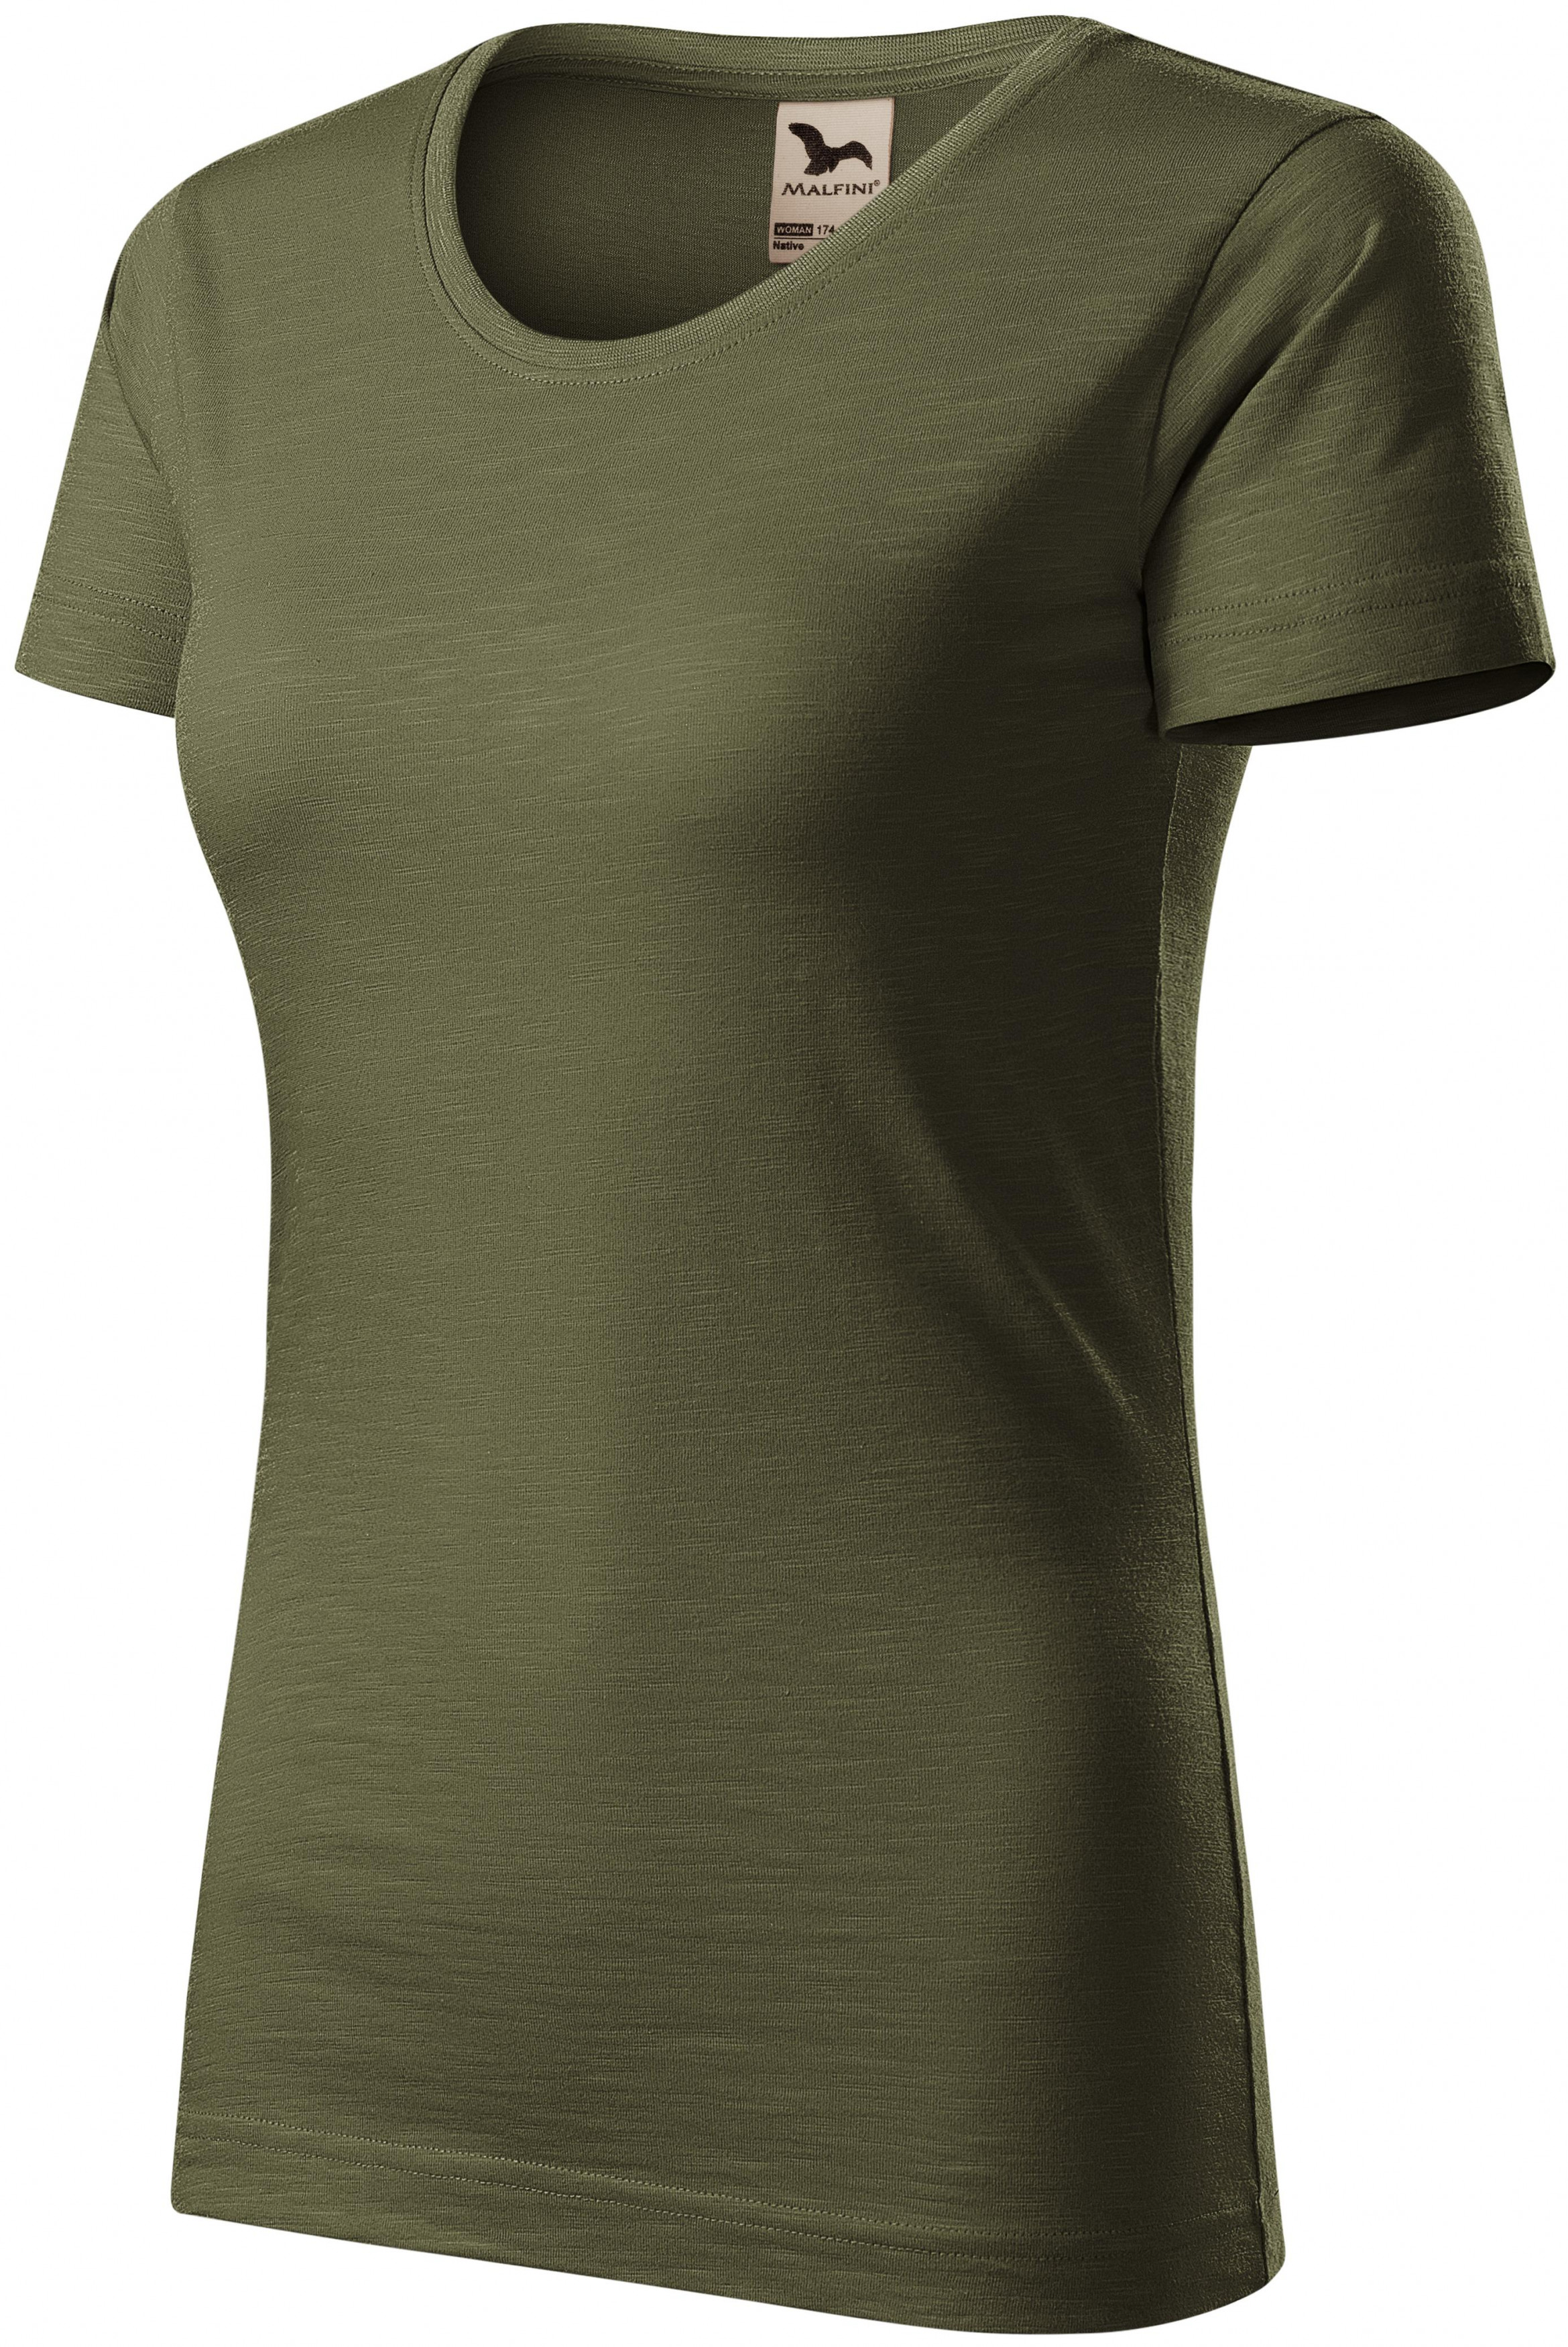 Dámske tričko, štruktúrovaná organická bavlna, military, S